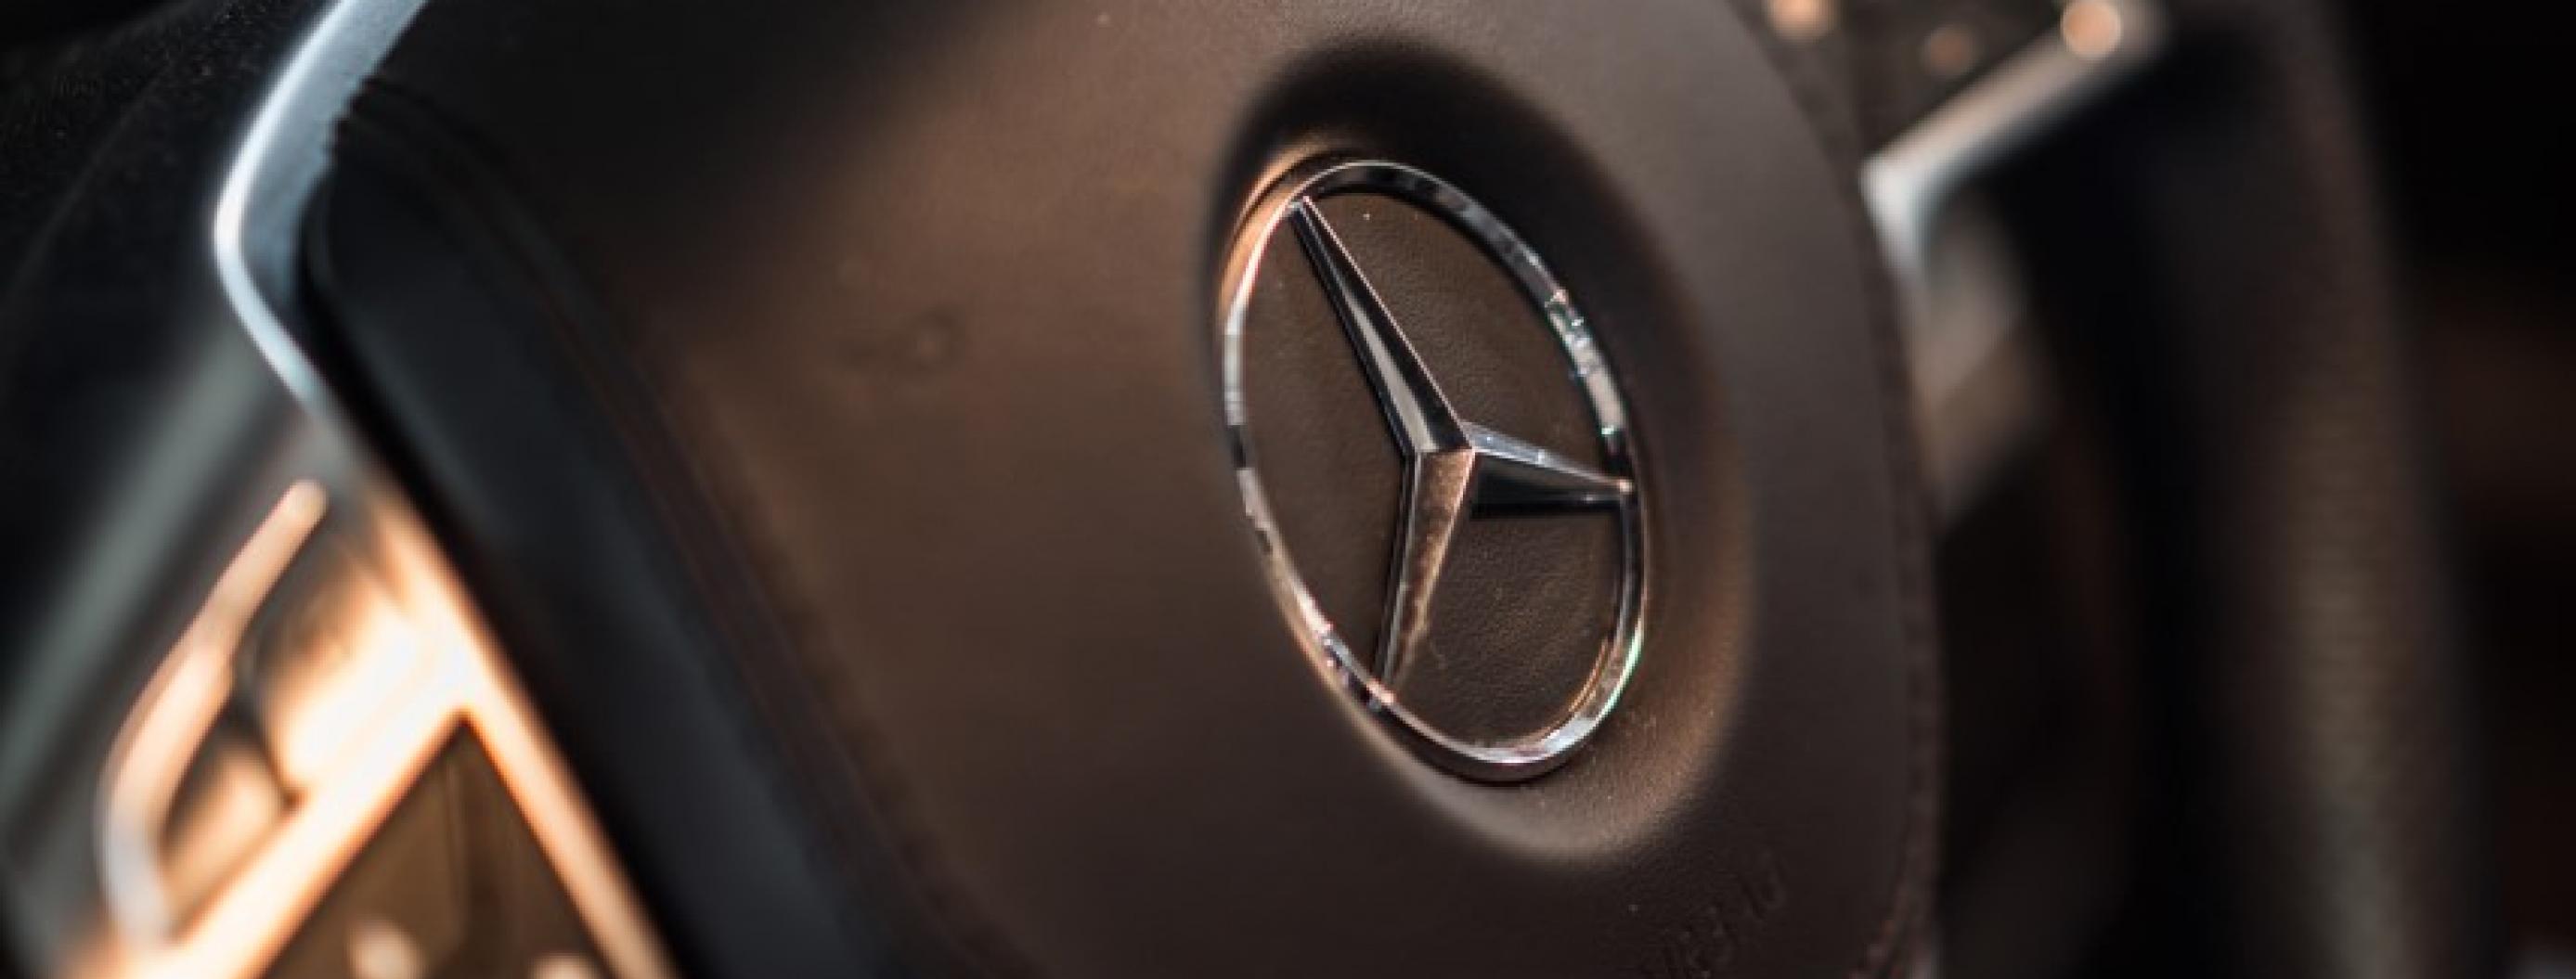 More About Mercedes Benz's Autonomous Driving System